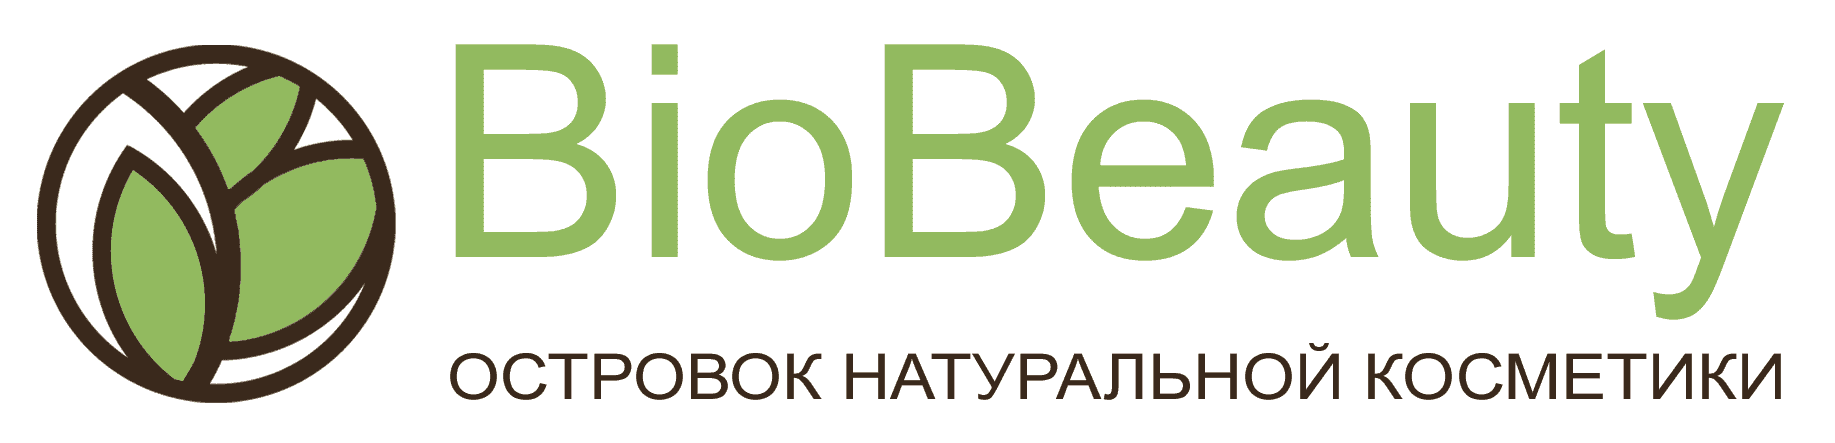 Онлайн Магазины С Доставкой В Беларусь